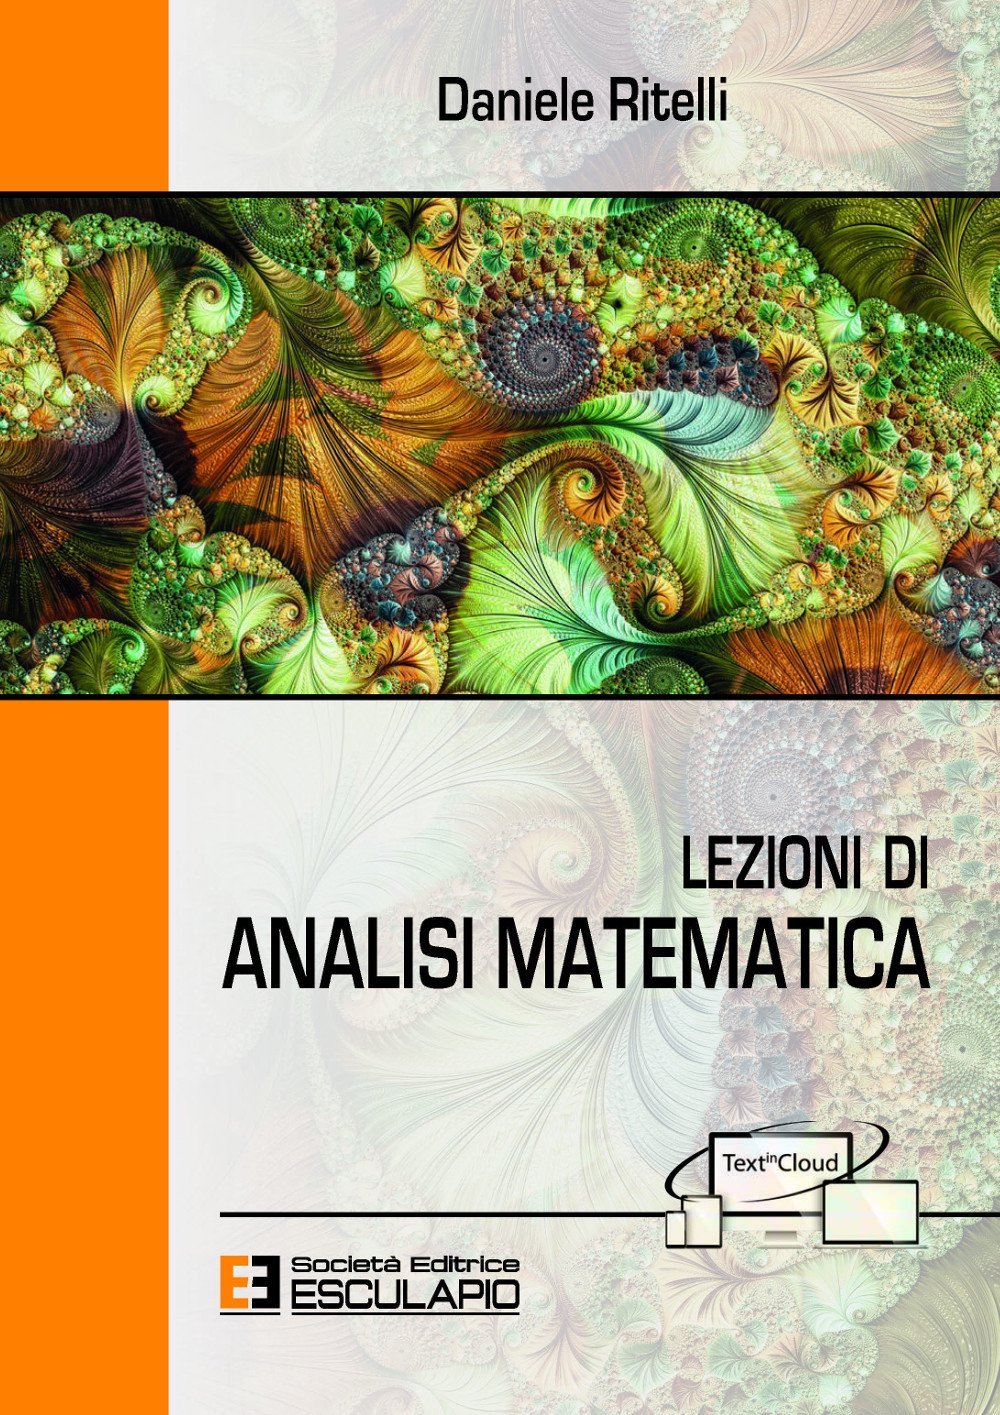 RITELLI - Lezioni di Analisi Matematica – Libreria Esculapio